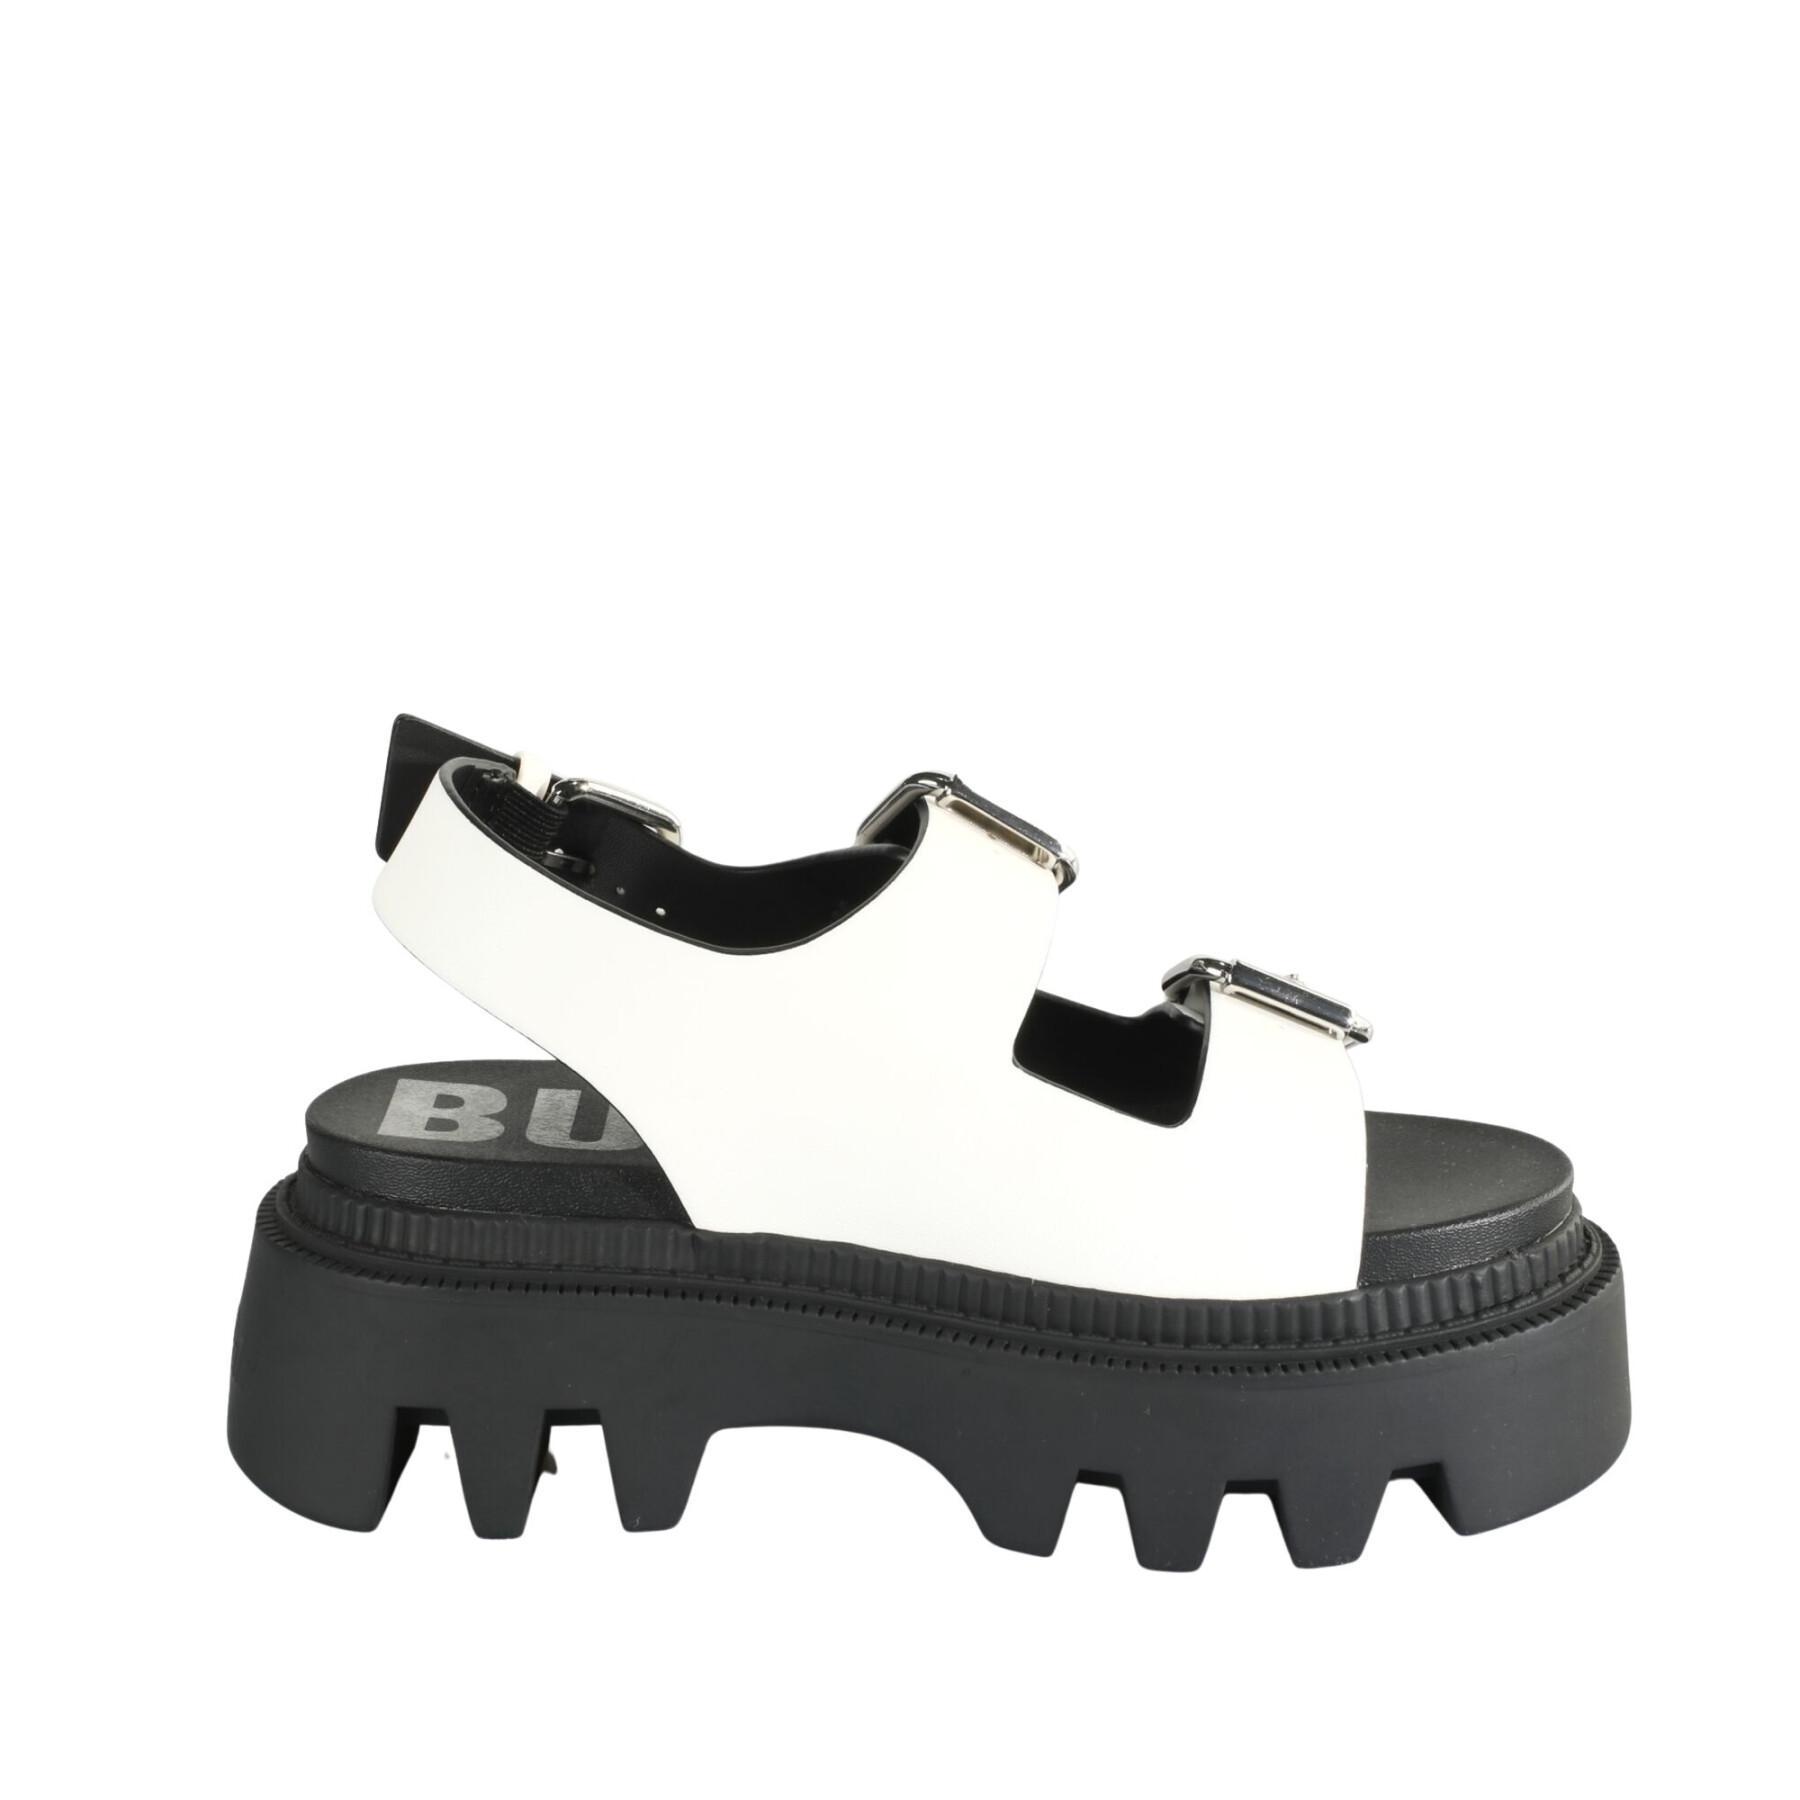 Platform sandals for women Buffalo Flora On